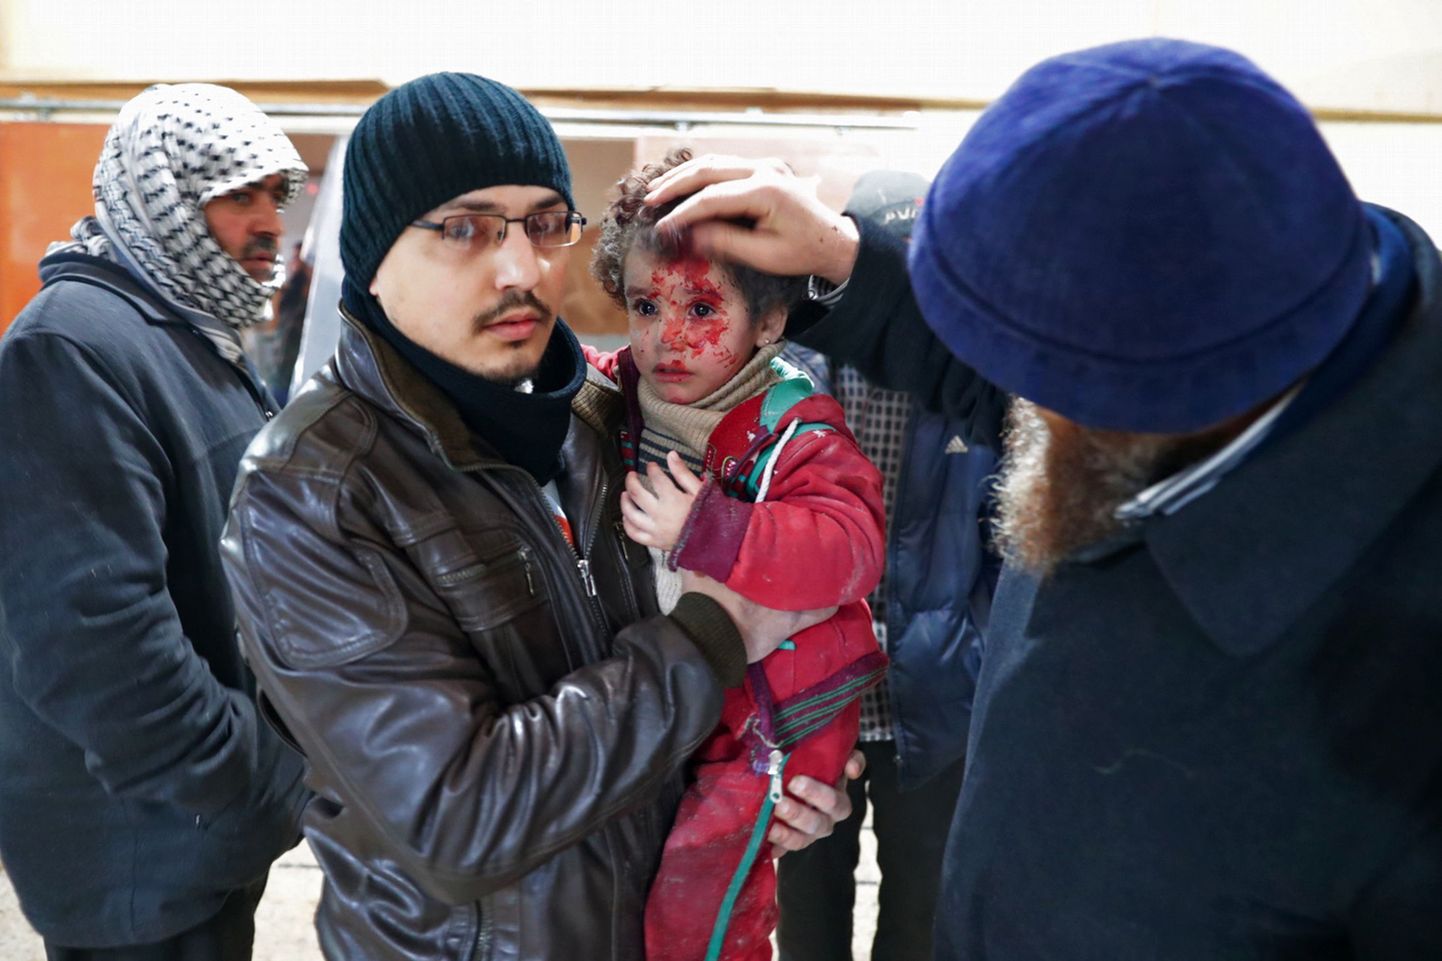 Viga saanud Süüria laps 29. detsembril 2016 pärast järjekordset pommitamist Douma linnas, mis on mässuliste käes.